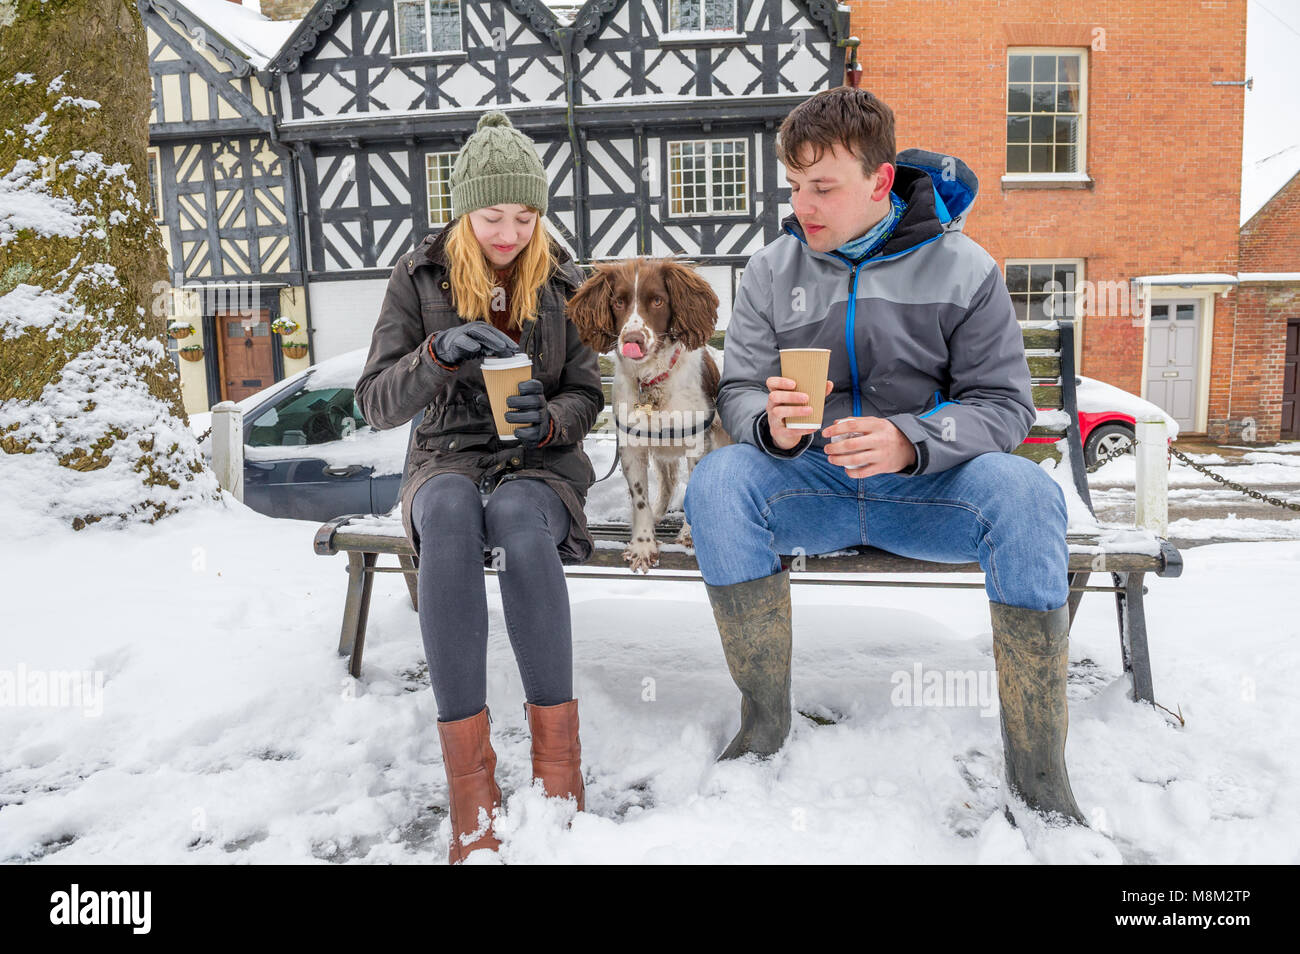 Ludlow, Shropshire, England, UK. 18. März 2018. Junges Paar und ihrem Hund genießen ein heißes Getränk auf eine verschneite Bank in Ludlow, Shropshire nach dem über Nacht Schnee Sturm. Alan Beastall/Alamy leben Nachrichten Stockfoto